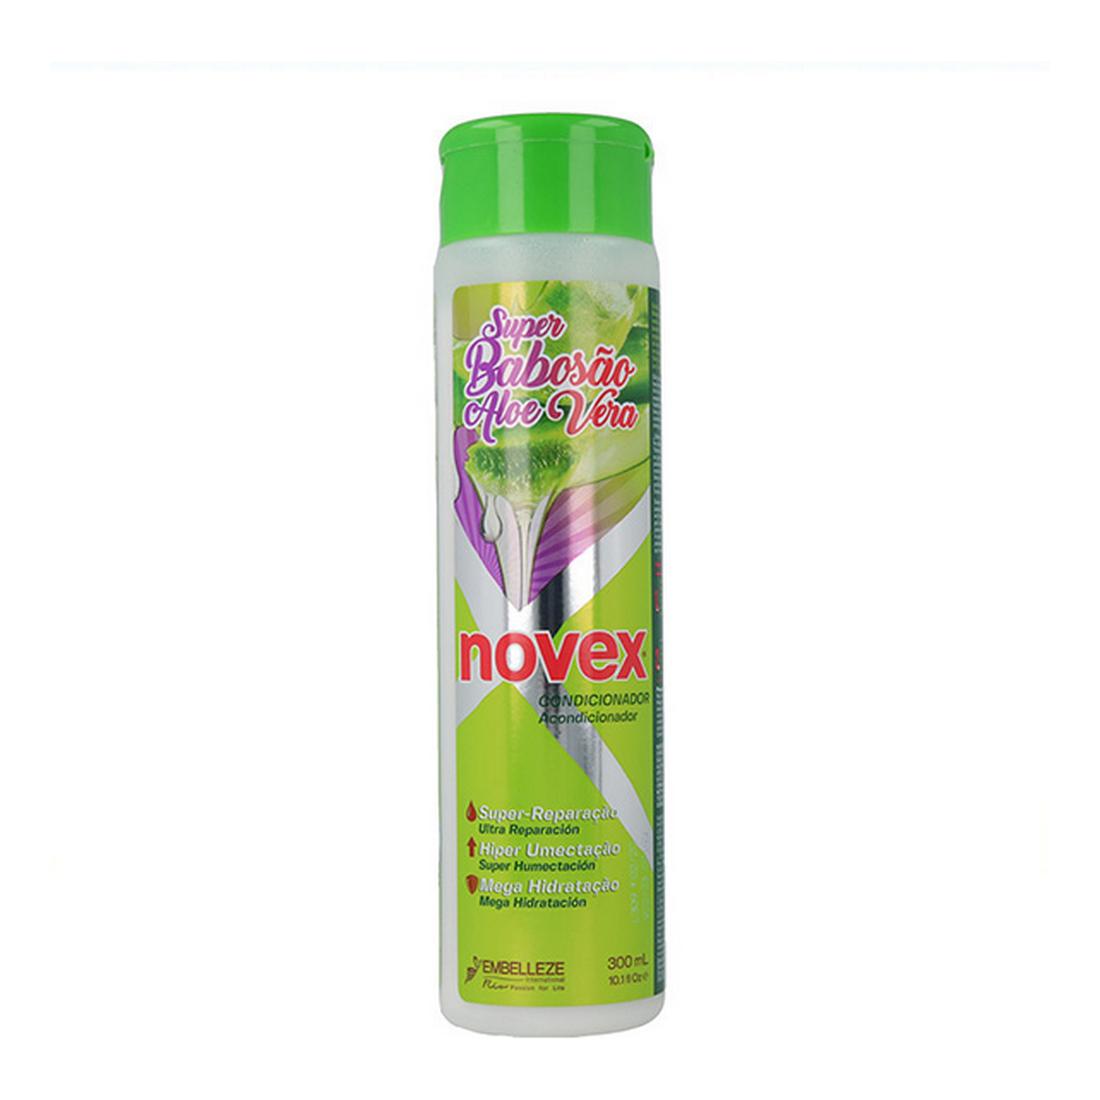 Balsam Super Novex Aloe Vera (300 ml)